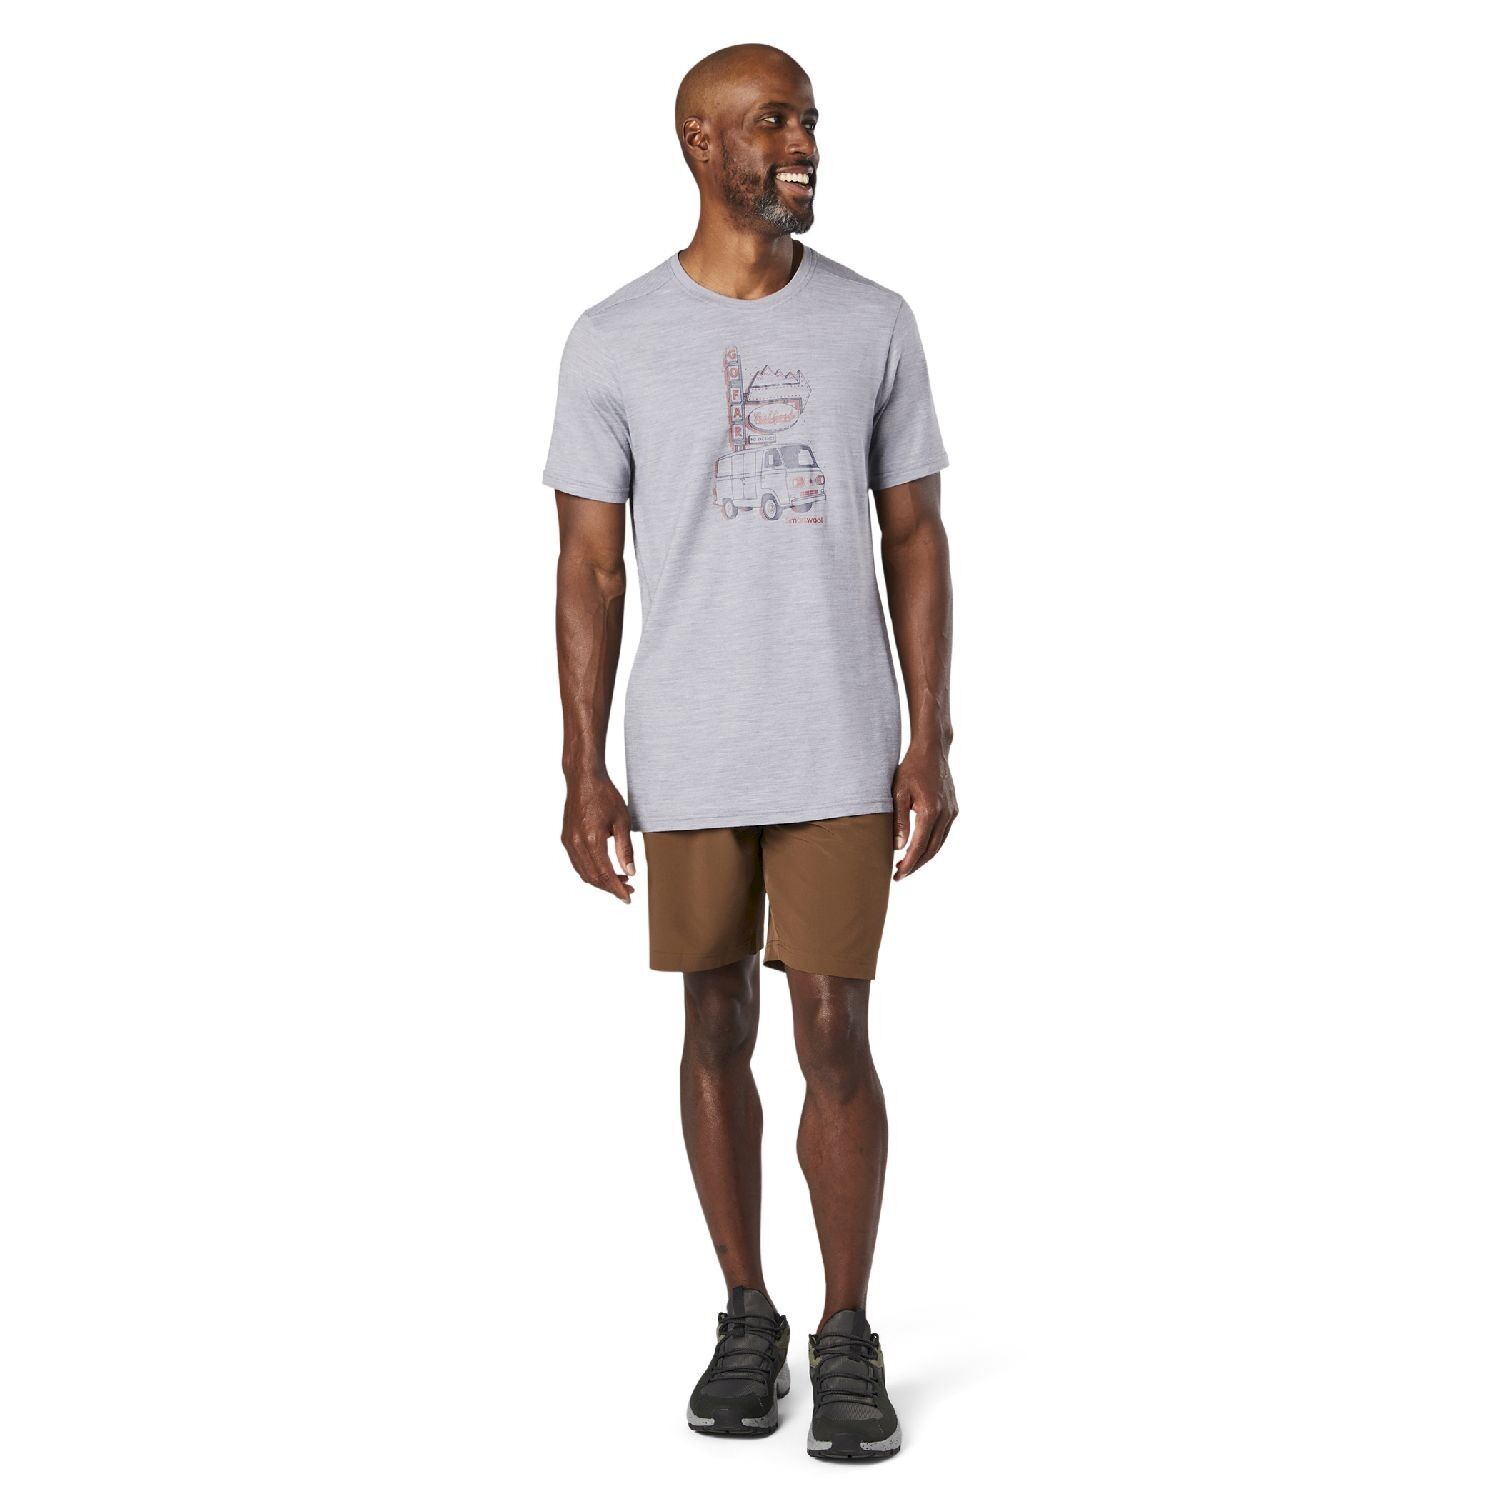 Smartwool Merino Sport 150 Van Days Graphic Tee - T-shirt - Men's